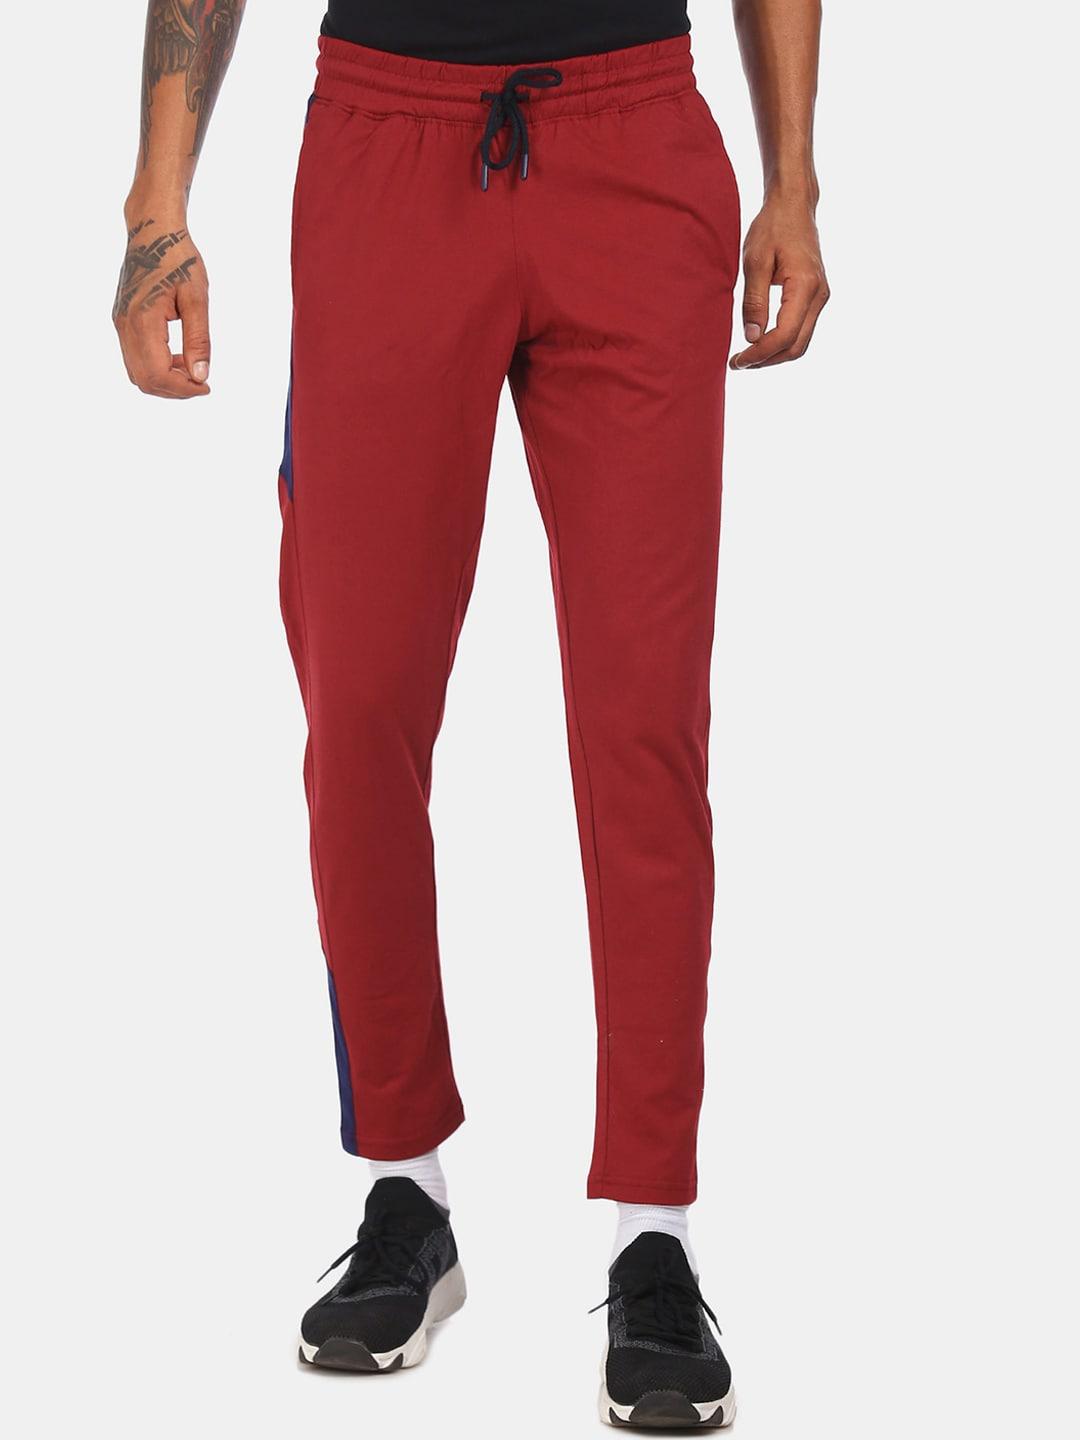 colt-men-red-solid-track-pants